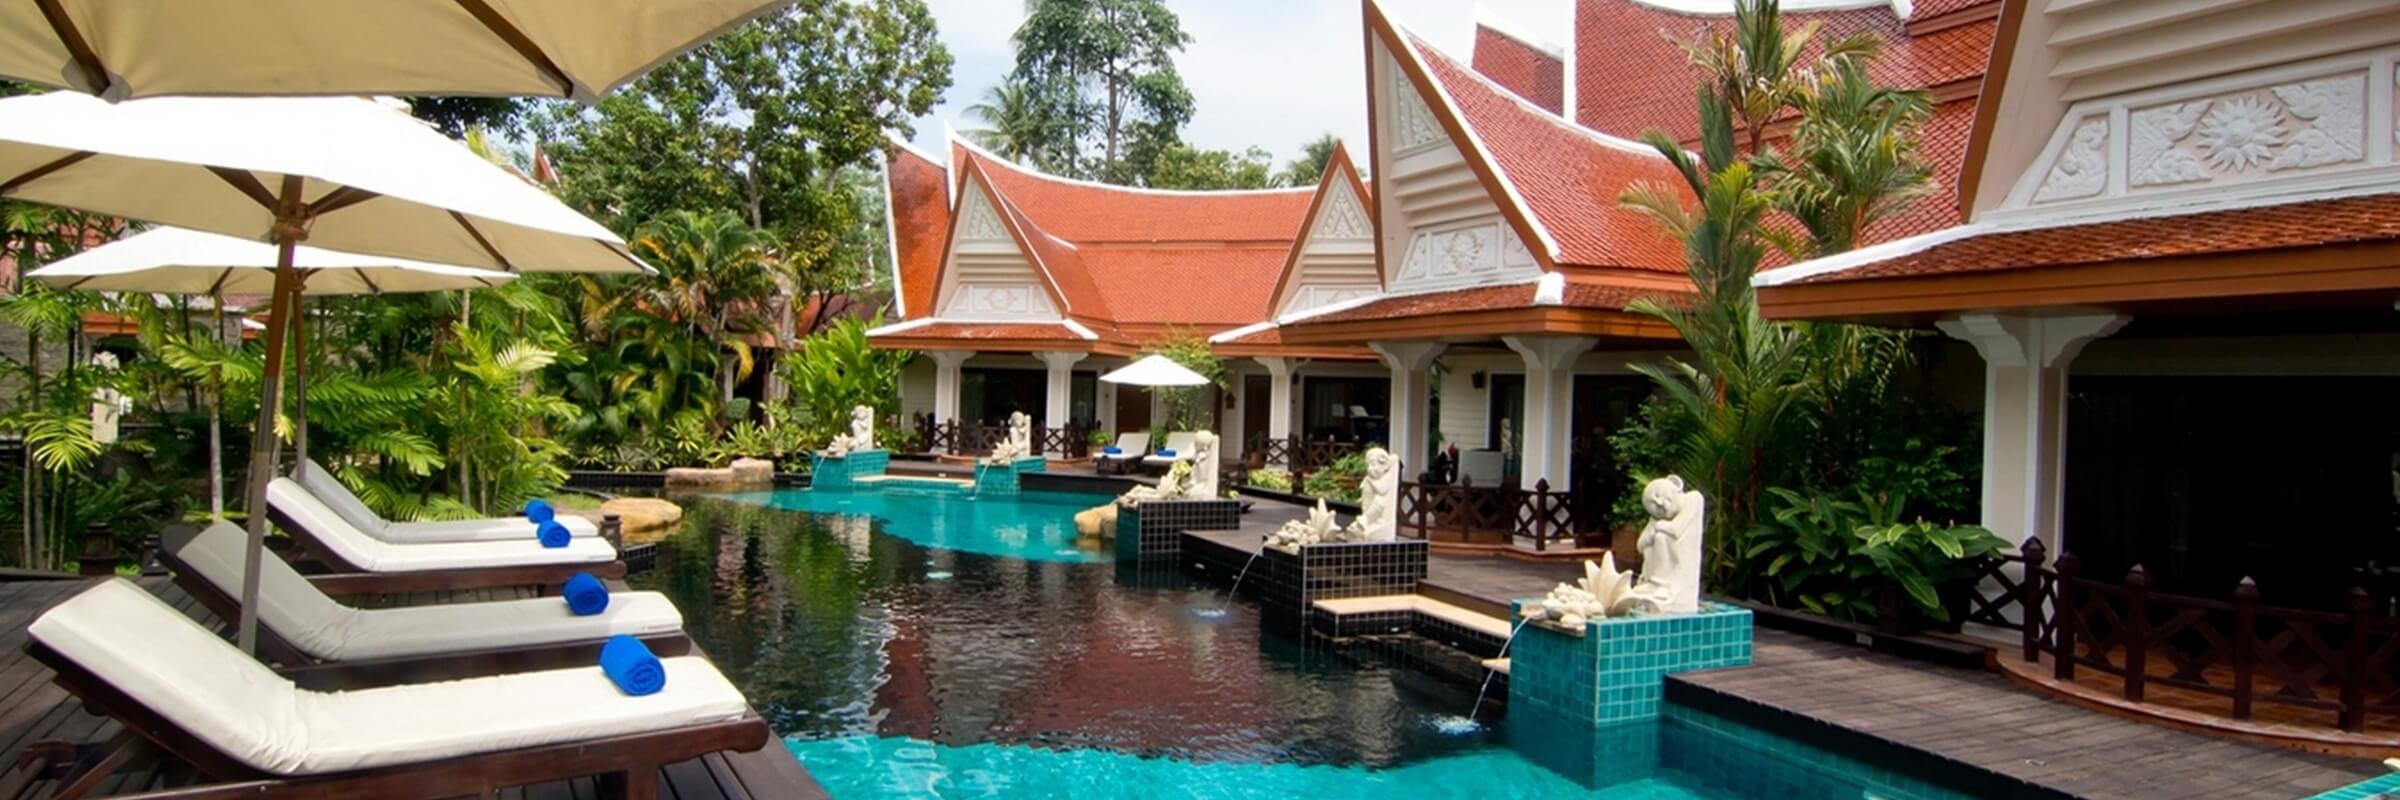 Die Chalets mit je 3-4 Wohneinheiten im traditionellen Thai-Stil sind um eine schöne Pool-Landschaft mit kleinem Wasserfall gruppiert.